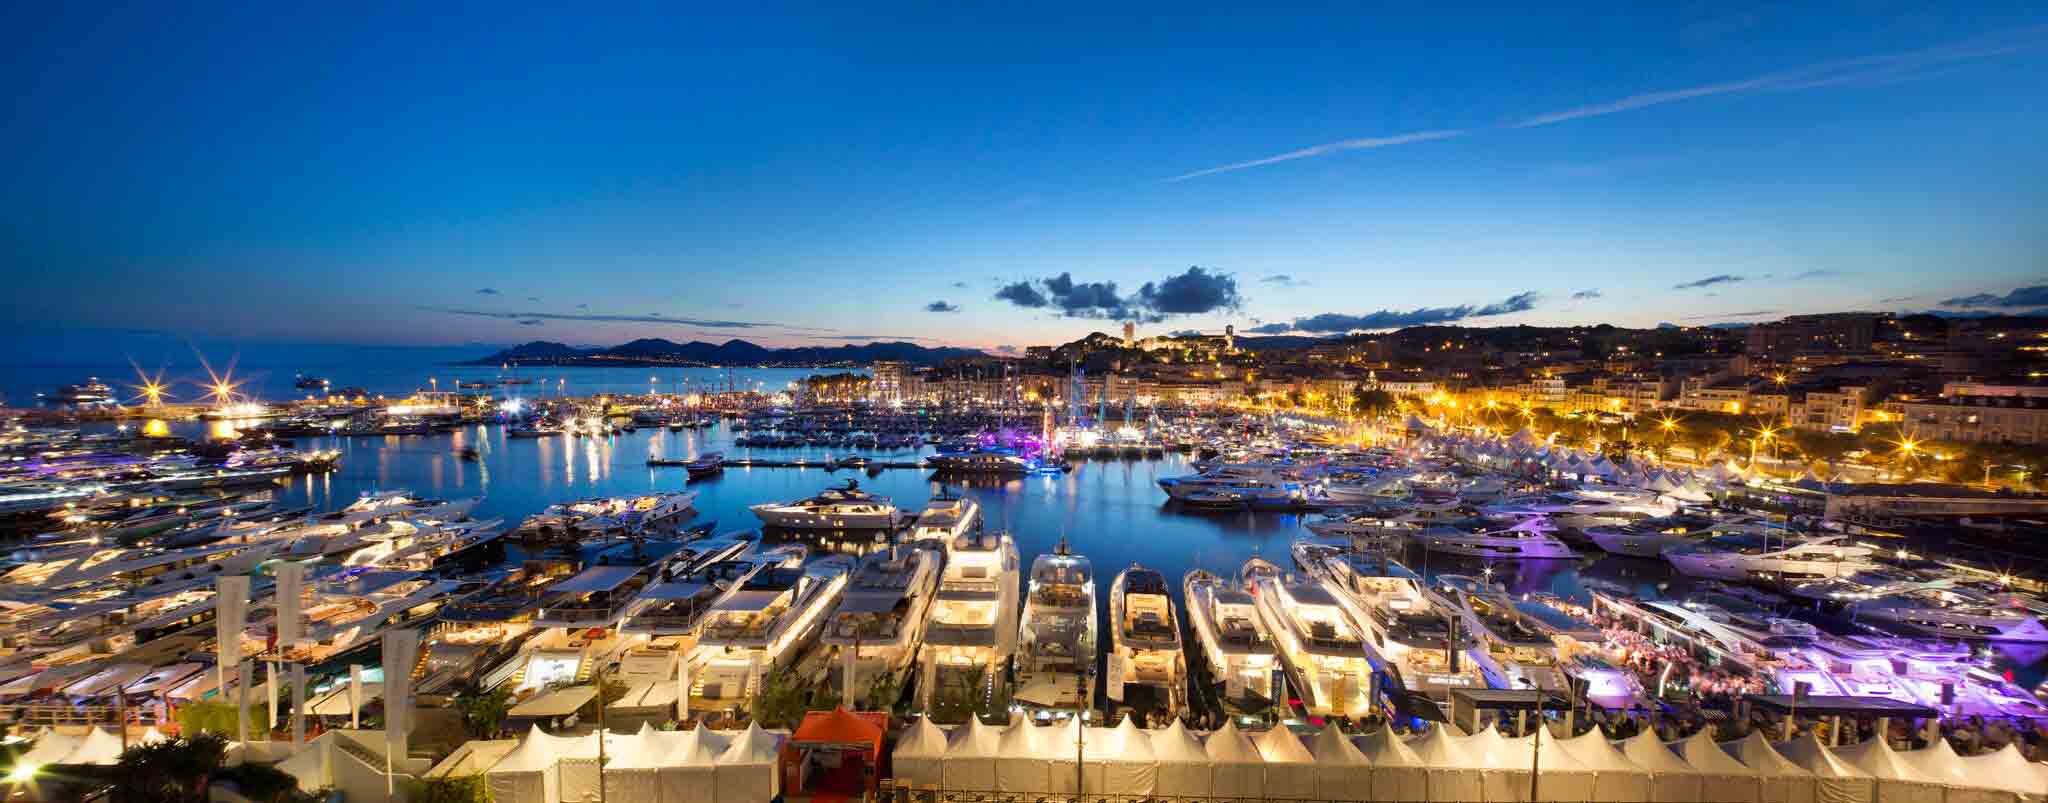 Résultat de recherche d'images pour "Yachting festival Cannes"